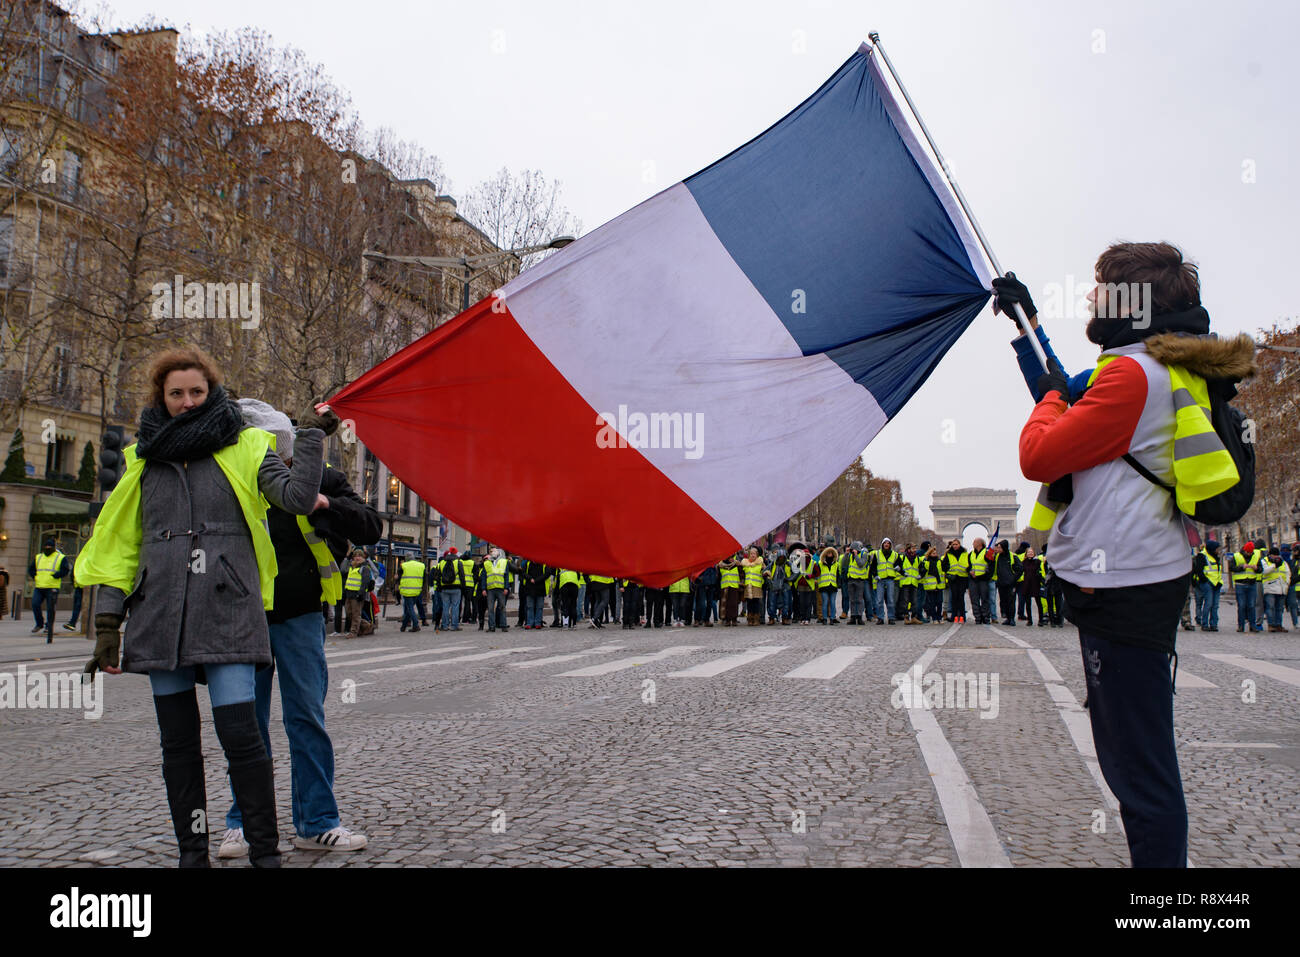 Giubbotti di giallo di dimostrazione (Gilets Jaunes) manifestanti contro le tasse sul carburante, governo e presidente Macron con bandiera a Champs-Élysées, Parigi, Francia Foto Stock